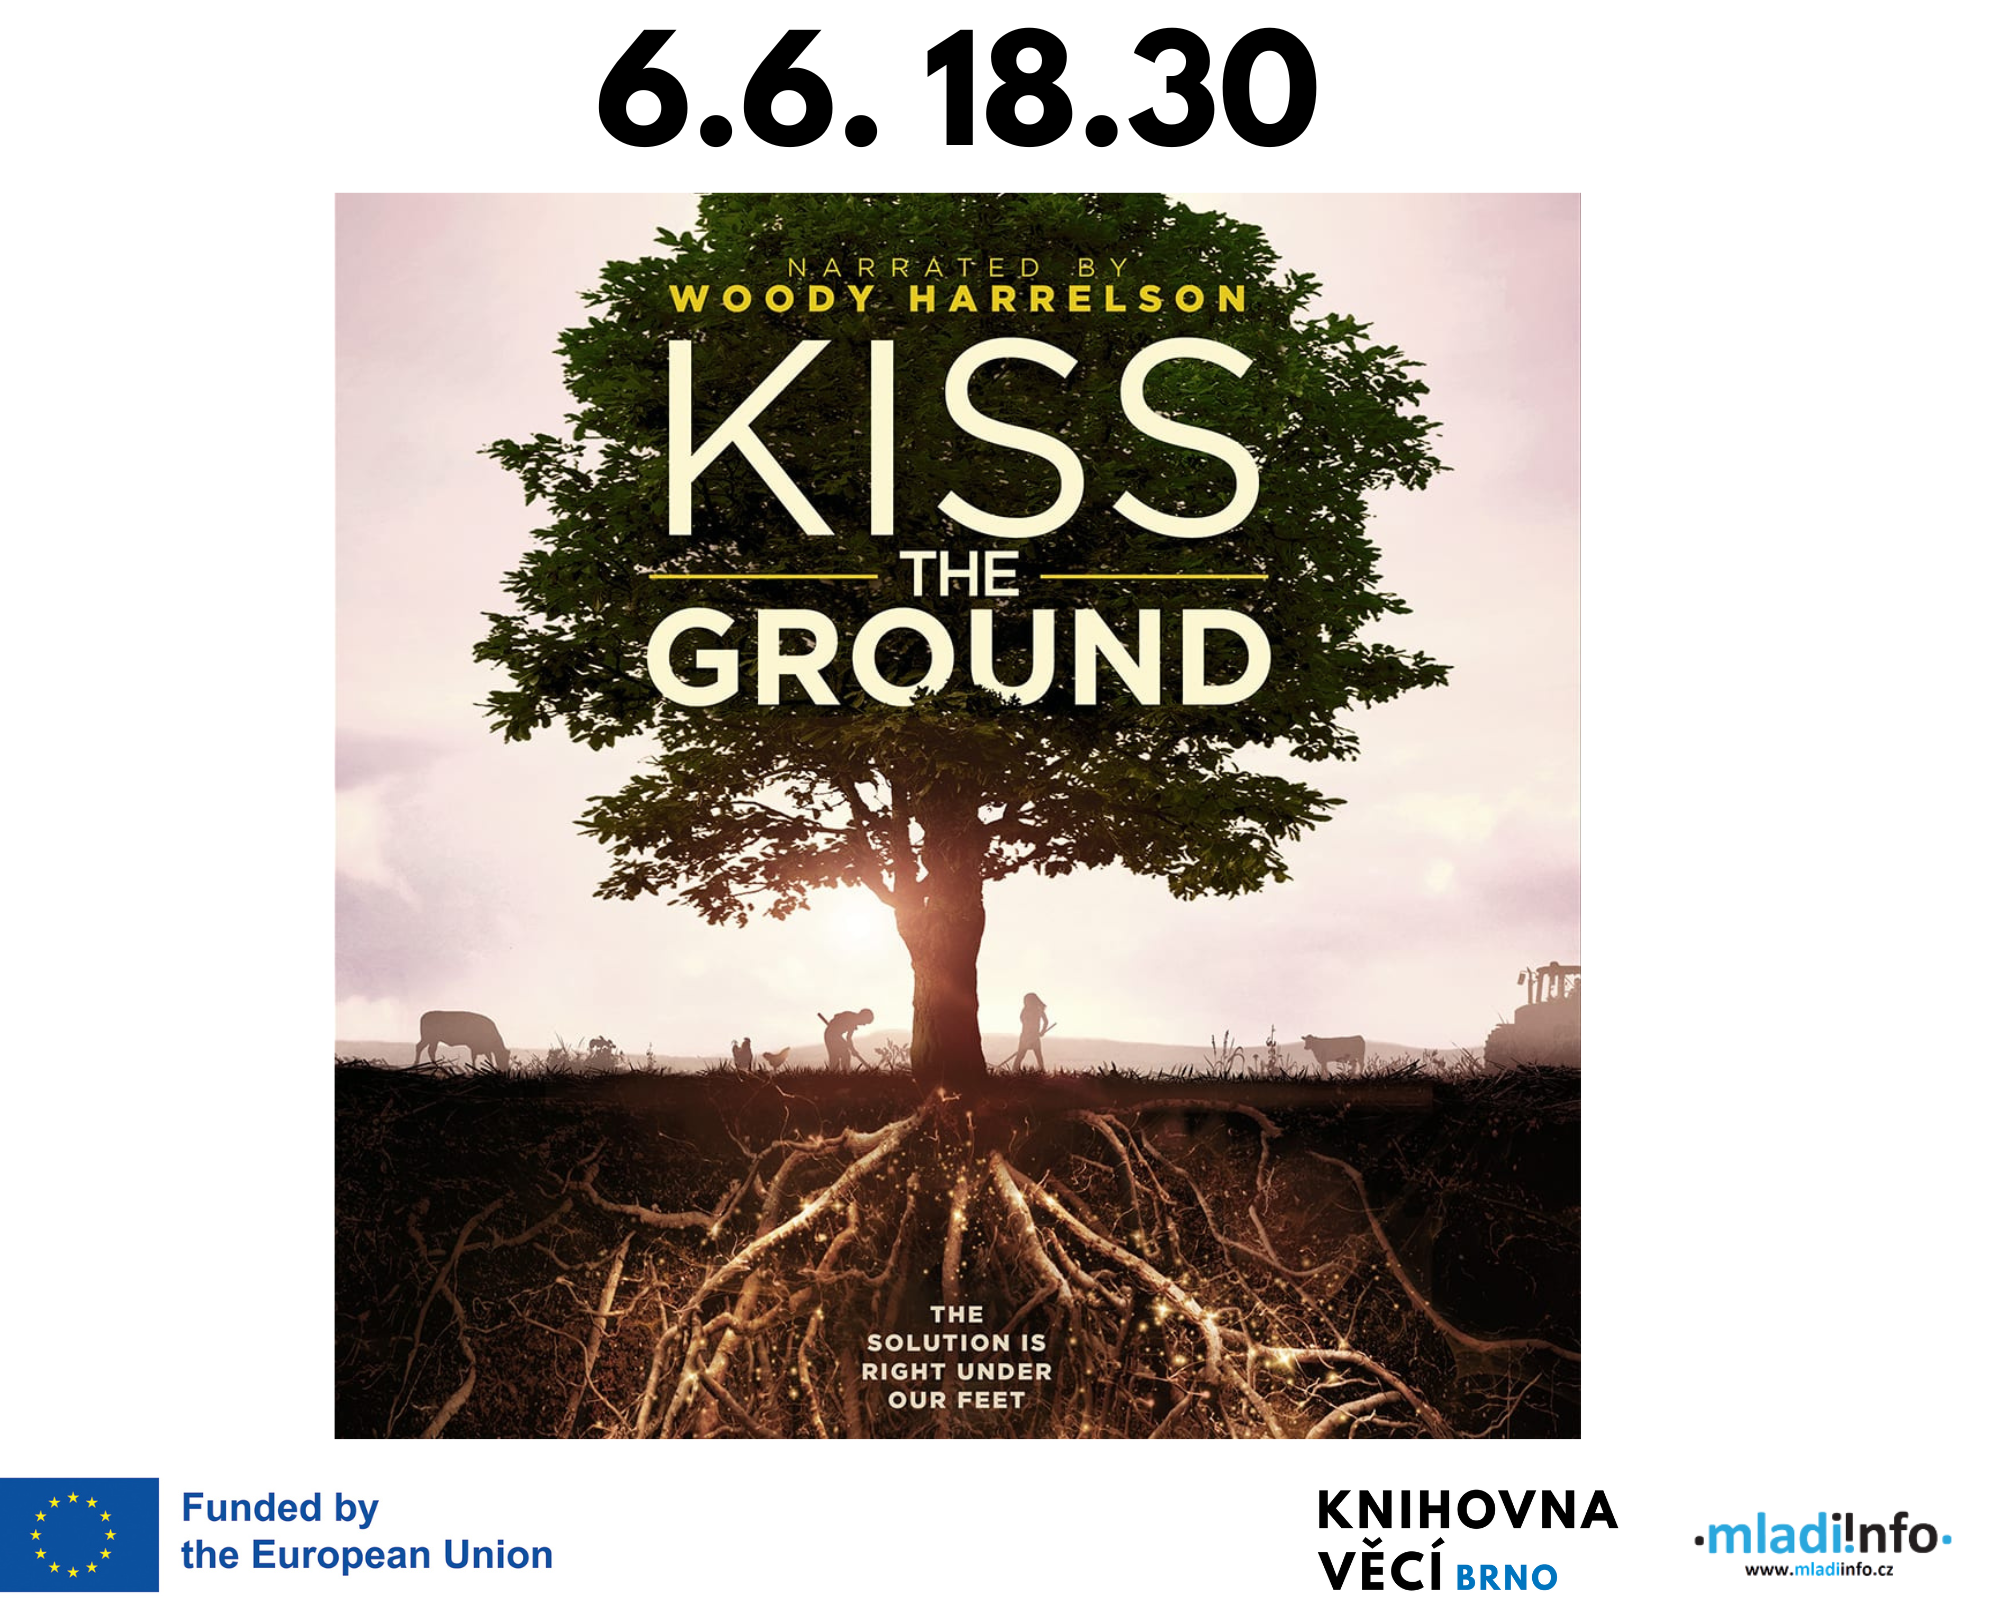 Promítání dokumentu KISS THE GROUND